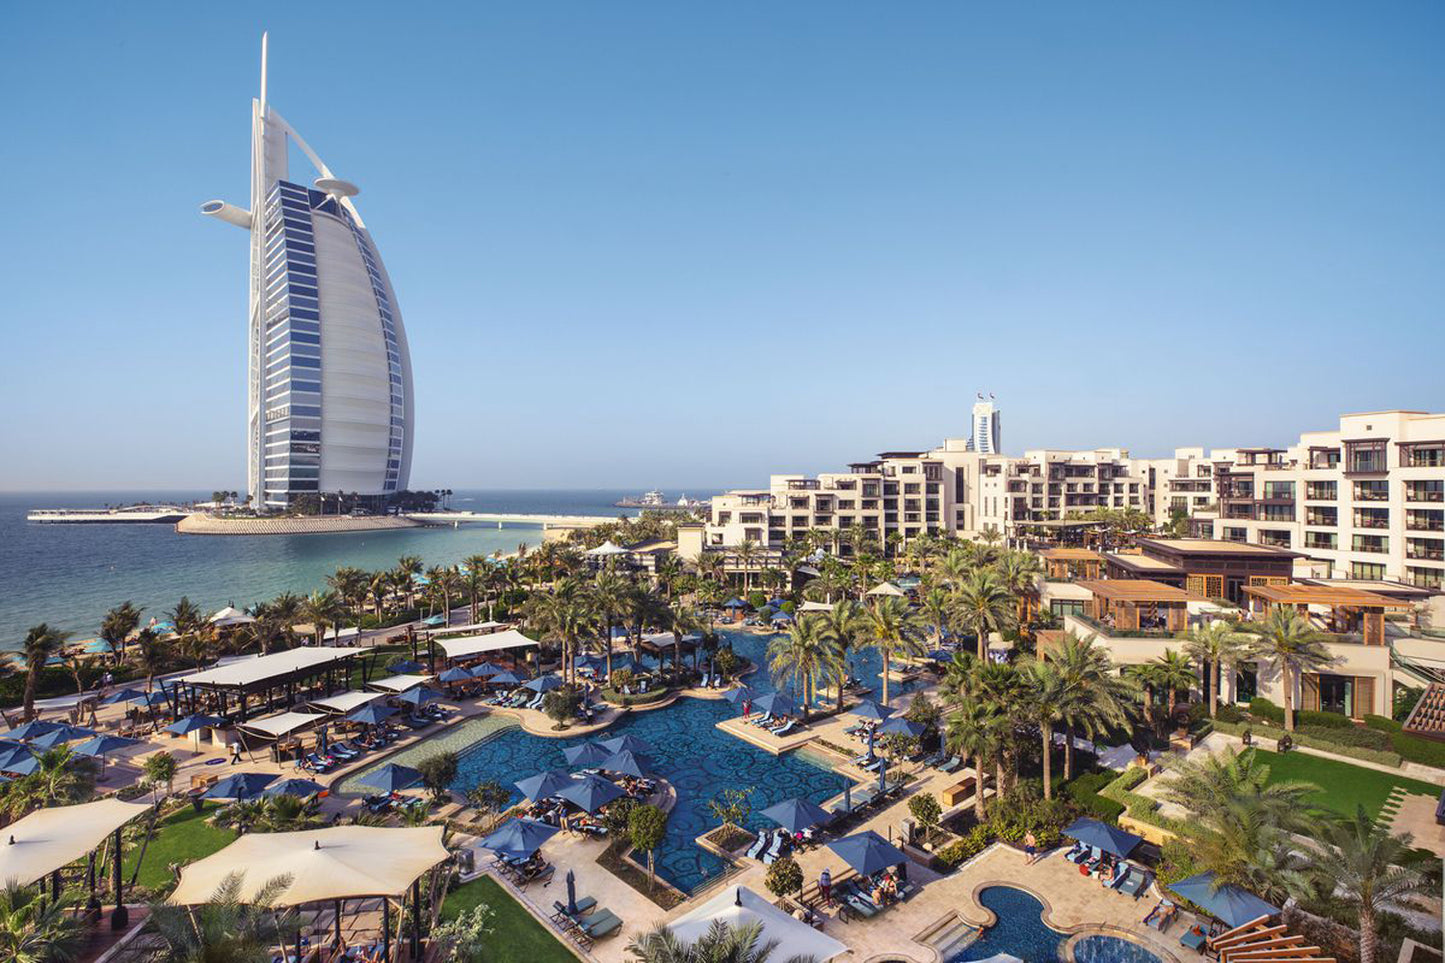 The Emirates Academy of Hospitality Management